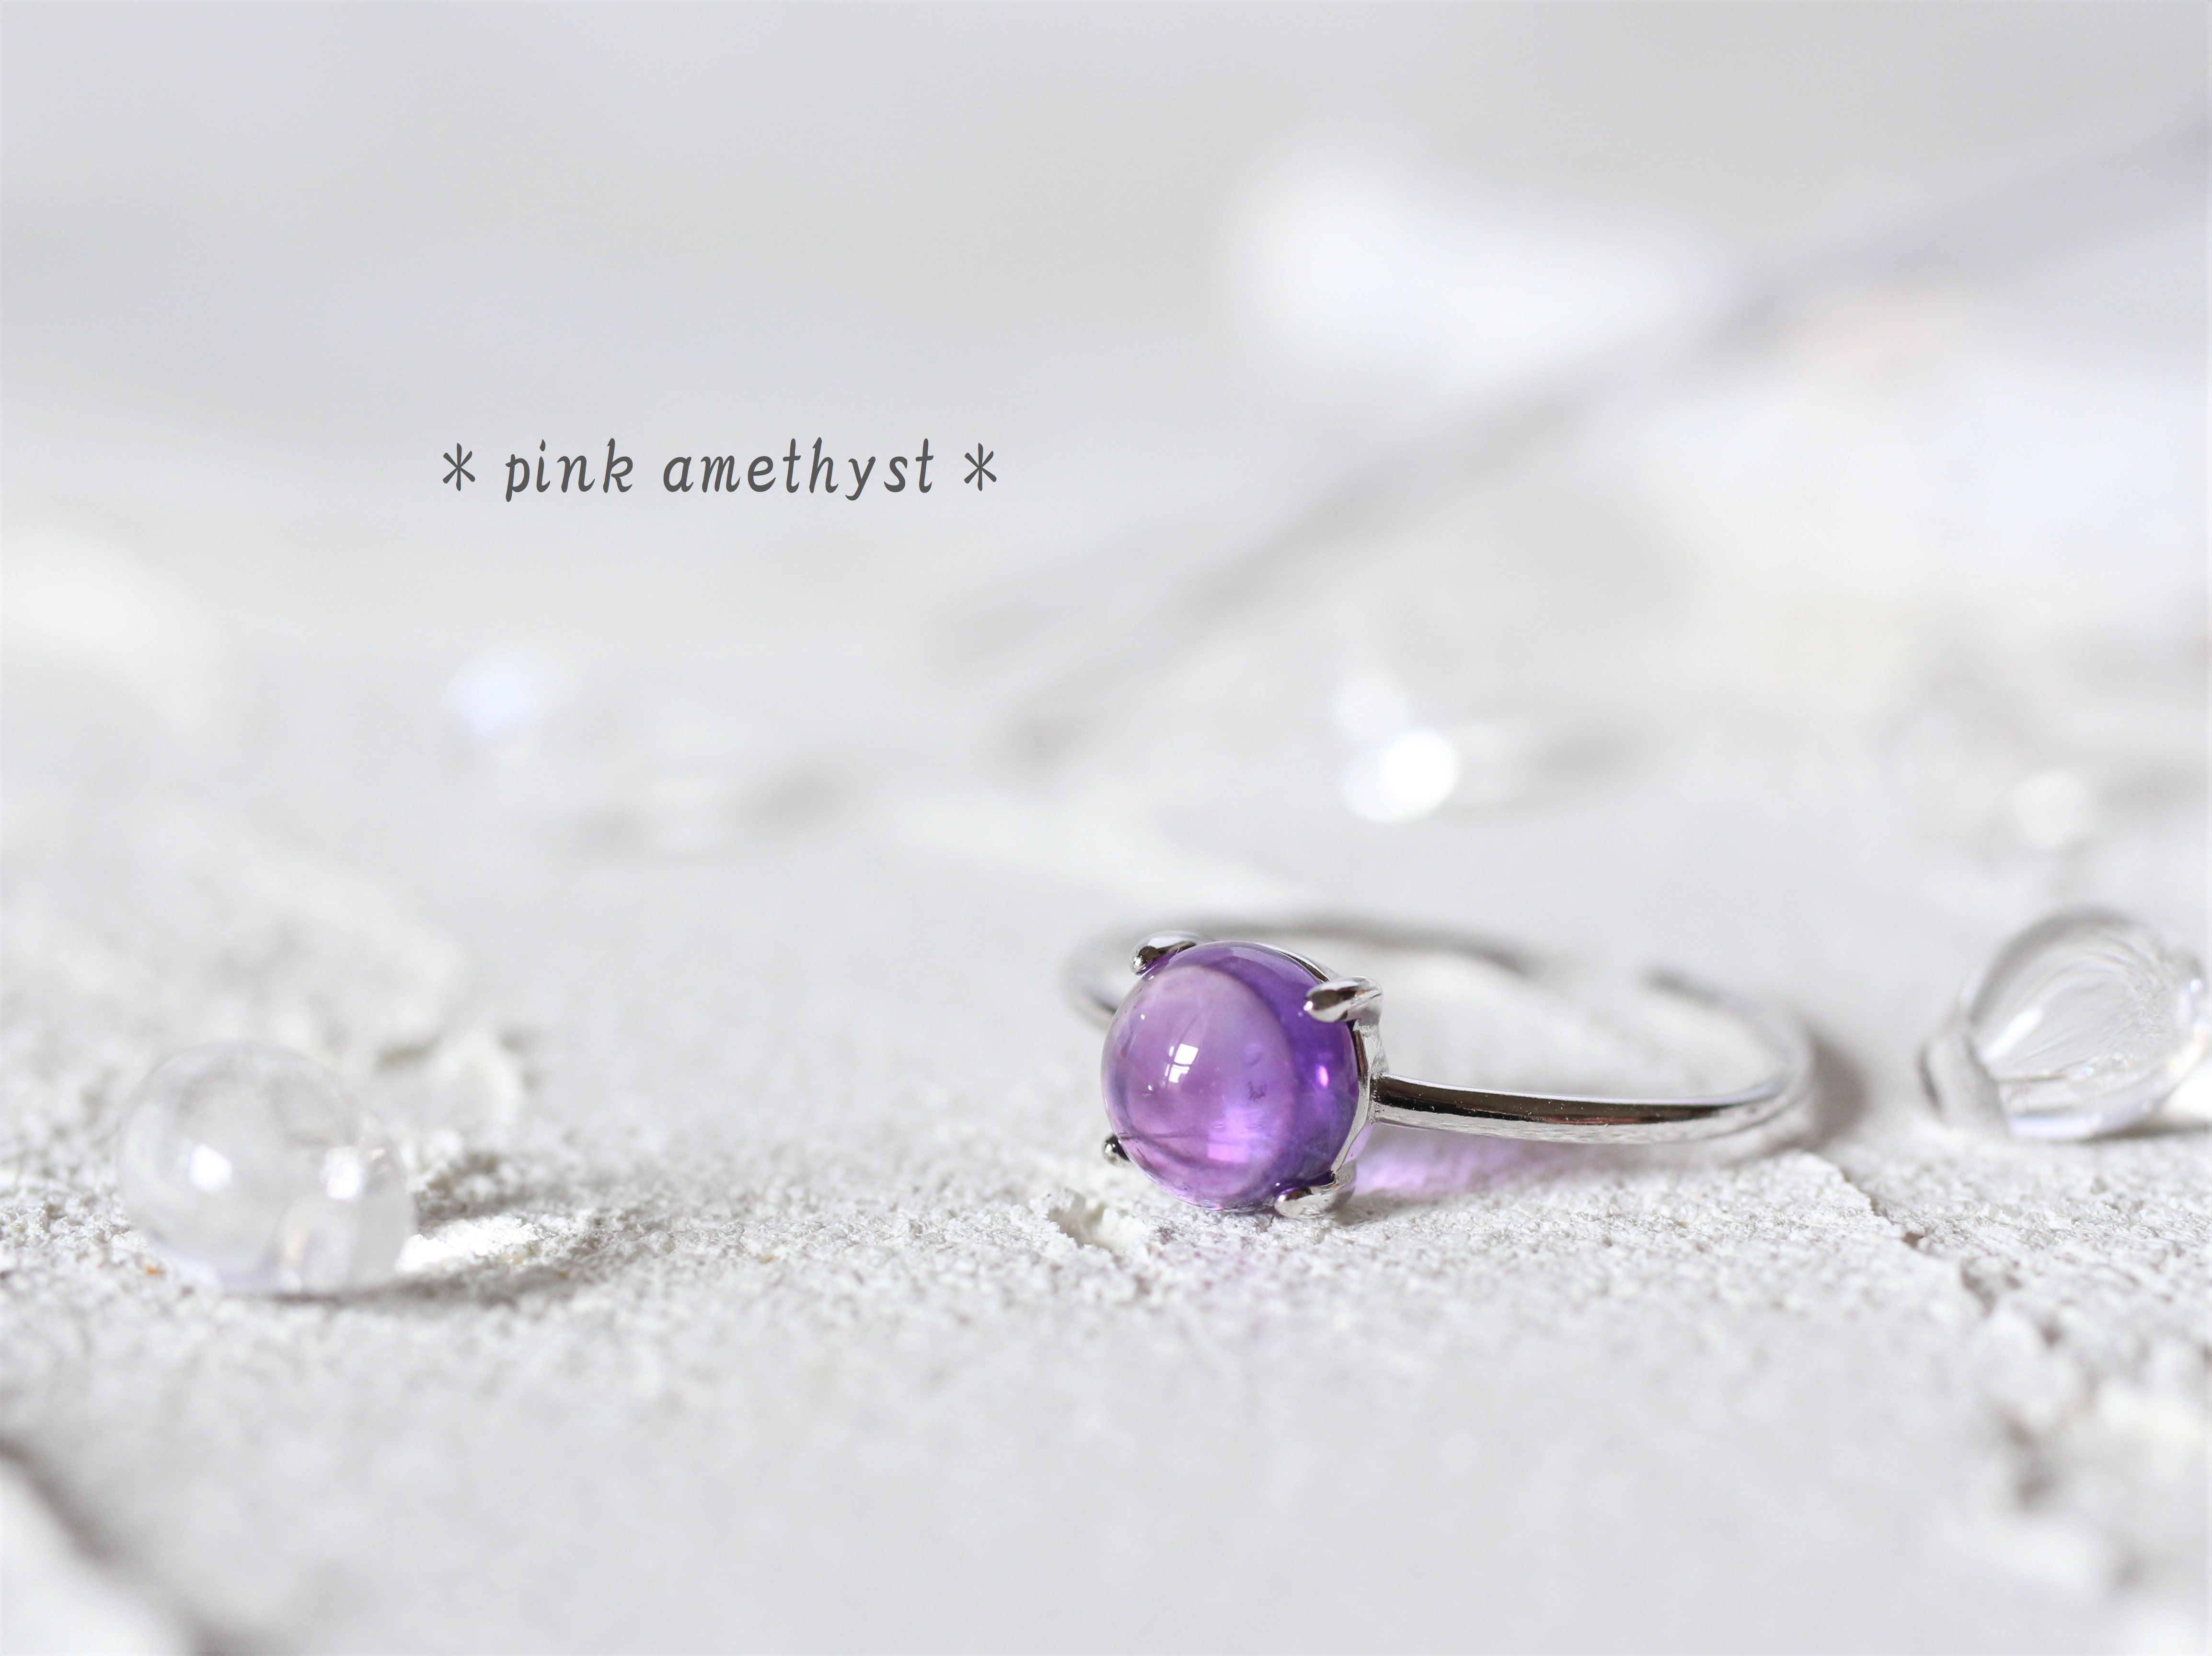 シルバー925 可憐なライラック色アメジストのリング サイズフリー 宝石質 指輪 Iichi ハンドメイド クラフト作品 手仕事品の通販